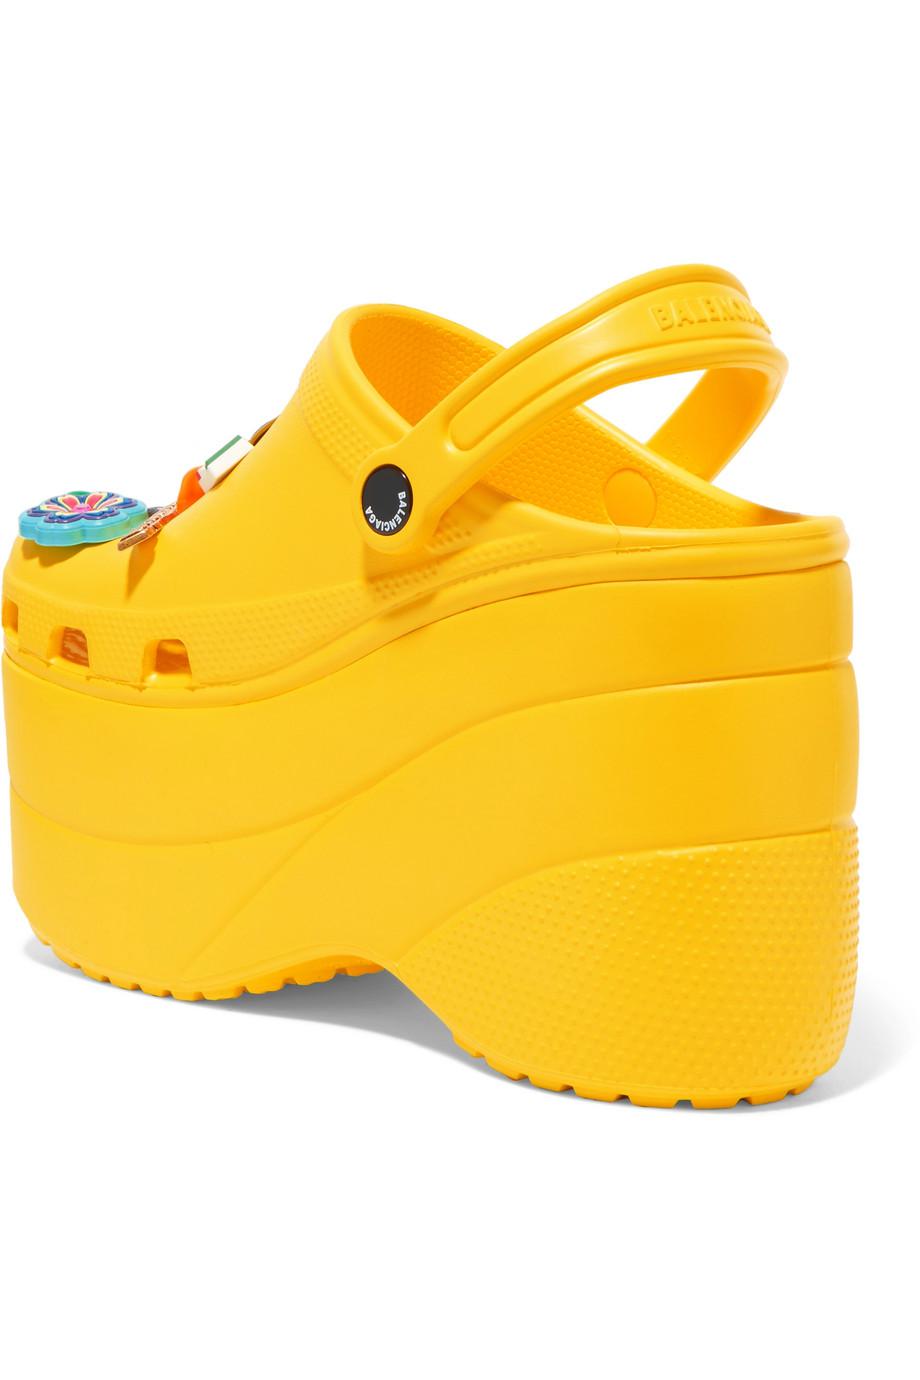 tilbage Shah Afskrække Balenciaga + Crocs Embellished Rubber Platform Sandals in Yellow - Lyst